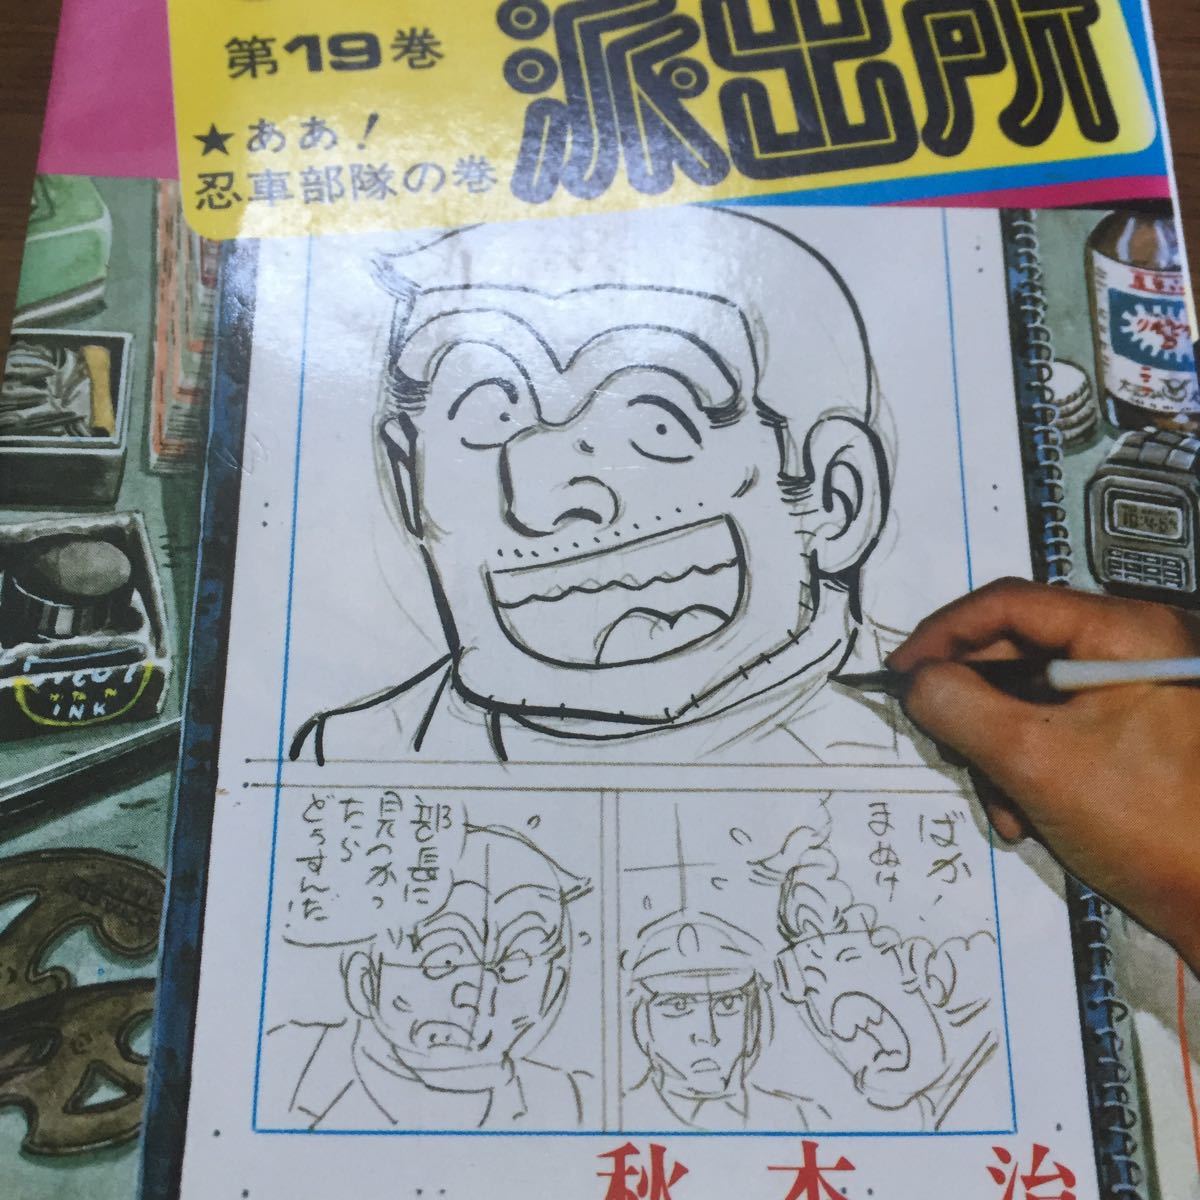  Kochira Katsushika-ku Kameari Kouenmae Hashutsujo комикс 19 шт 